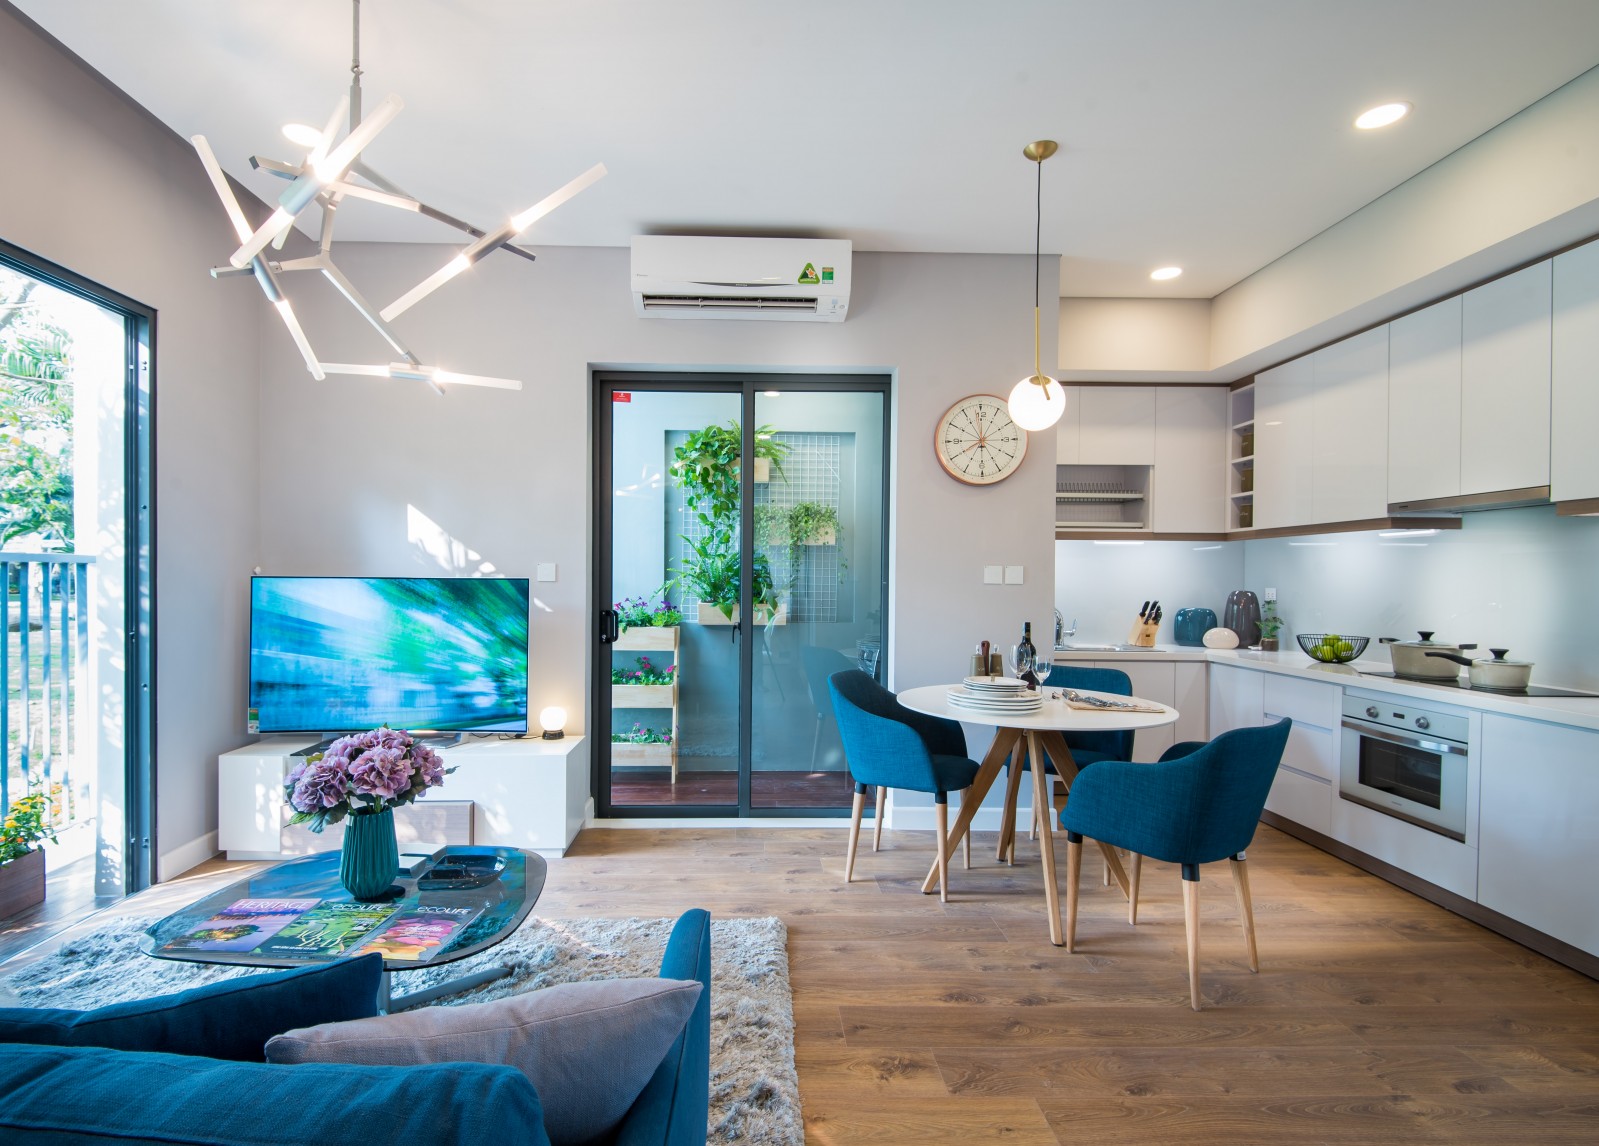 Thiết kế căn hộ Aqua Bay sky residences đảm bảo tối đa ánh sáng tự nhiên trong căn hộ.